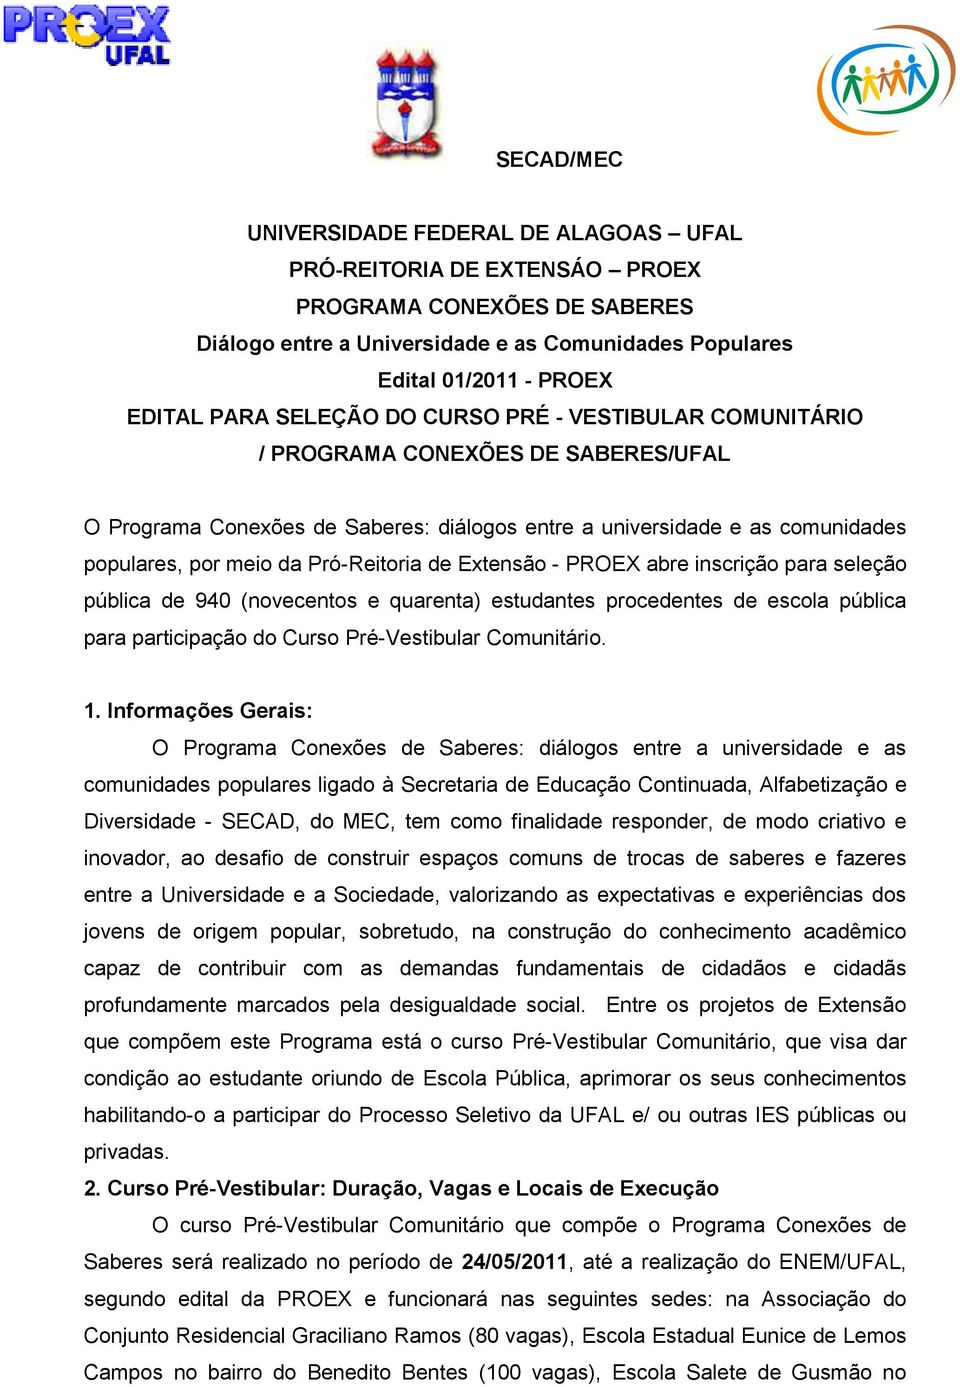 Extensão - PROEX abre inscrição para seleção pública de 940 (novecentos e quarenta) estudantes procedentes de escola pública para participação do Curso Pré-Vestibular Comunitário. 1.